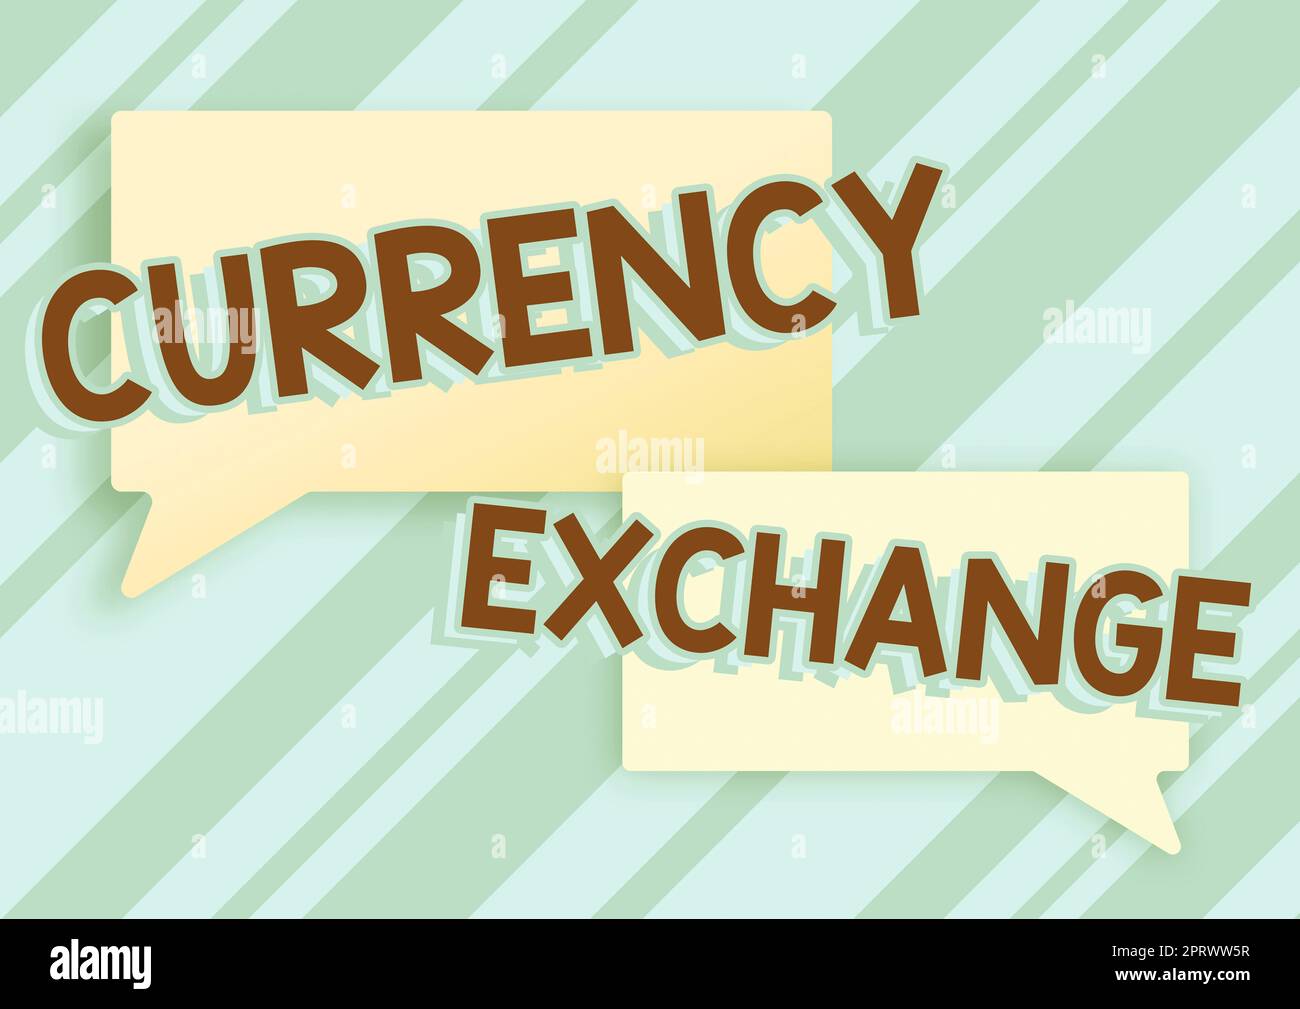 Schreiben mit Text Währungsumtauschprozess zum Wechseln einer Währung in einen anderen Devisen. Internet-Konzept Prozess des Wechsels einer Währung in eine andere Devise Stockfoto